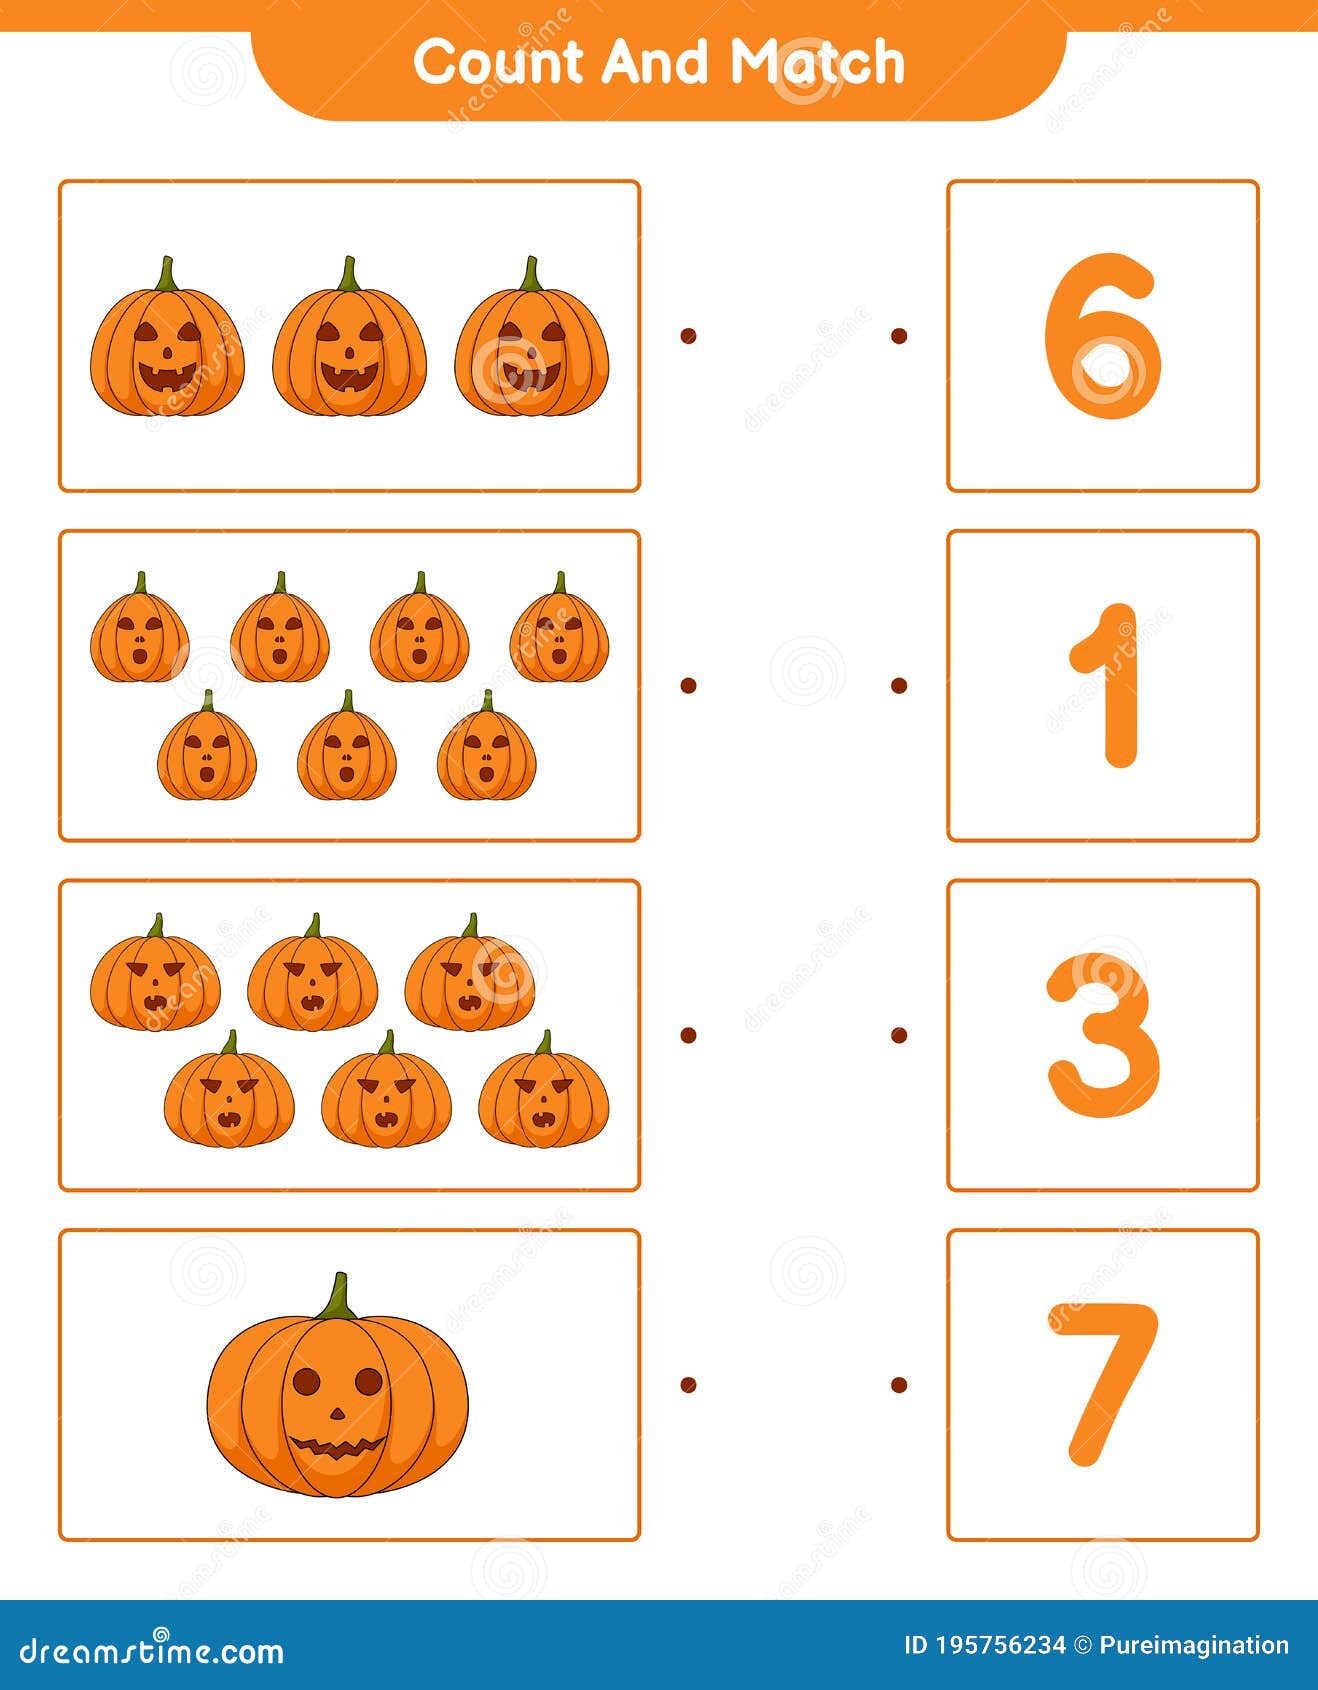 counting-pumpkins-worksheet